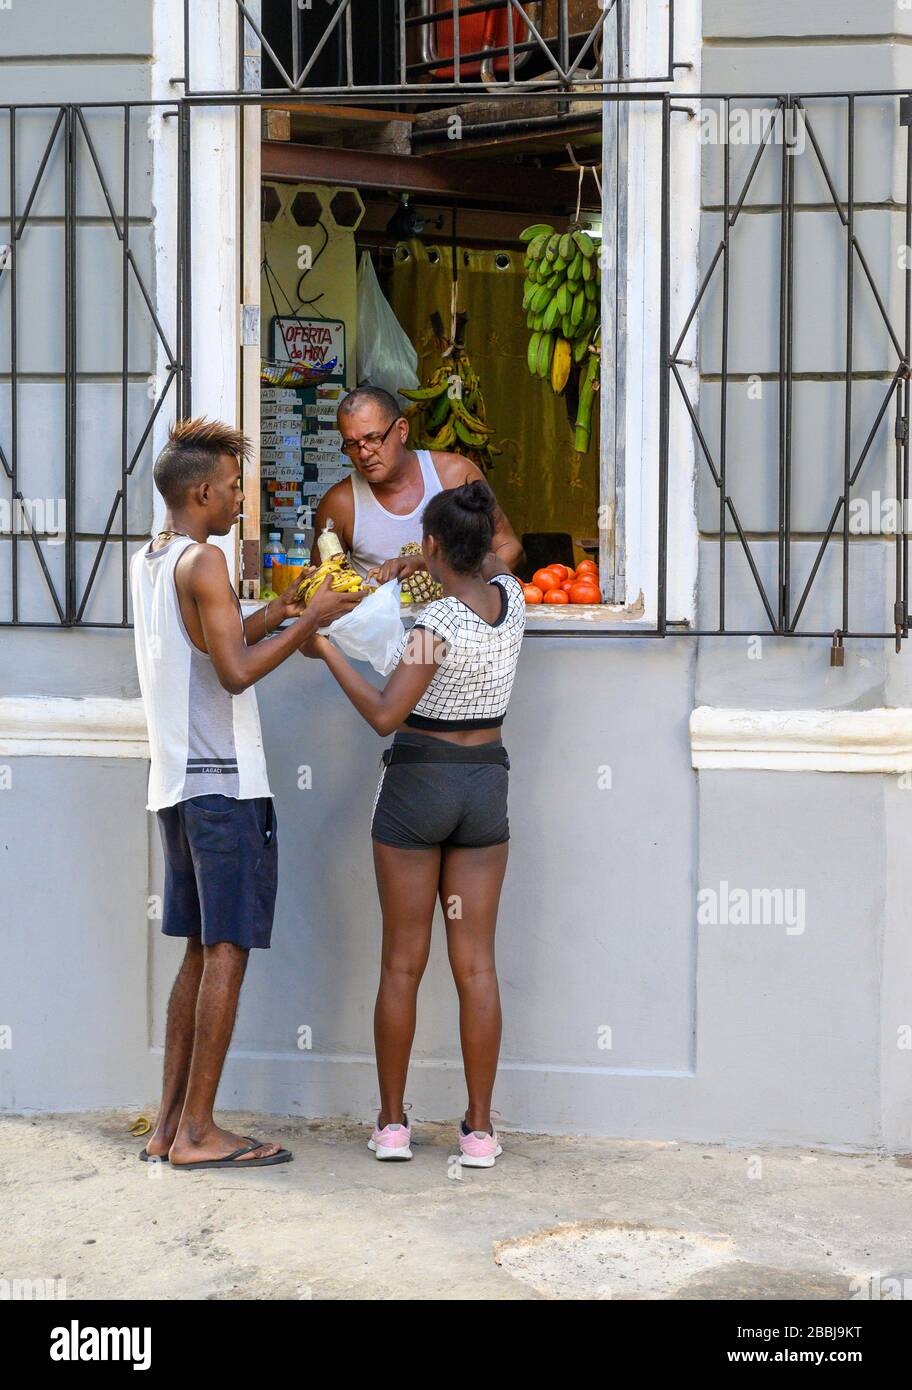 Vendeur de rue, la Havane Vieja, Cuba Banque D'Images